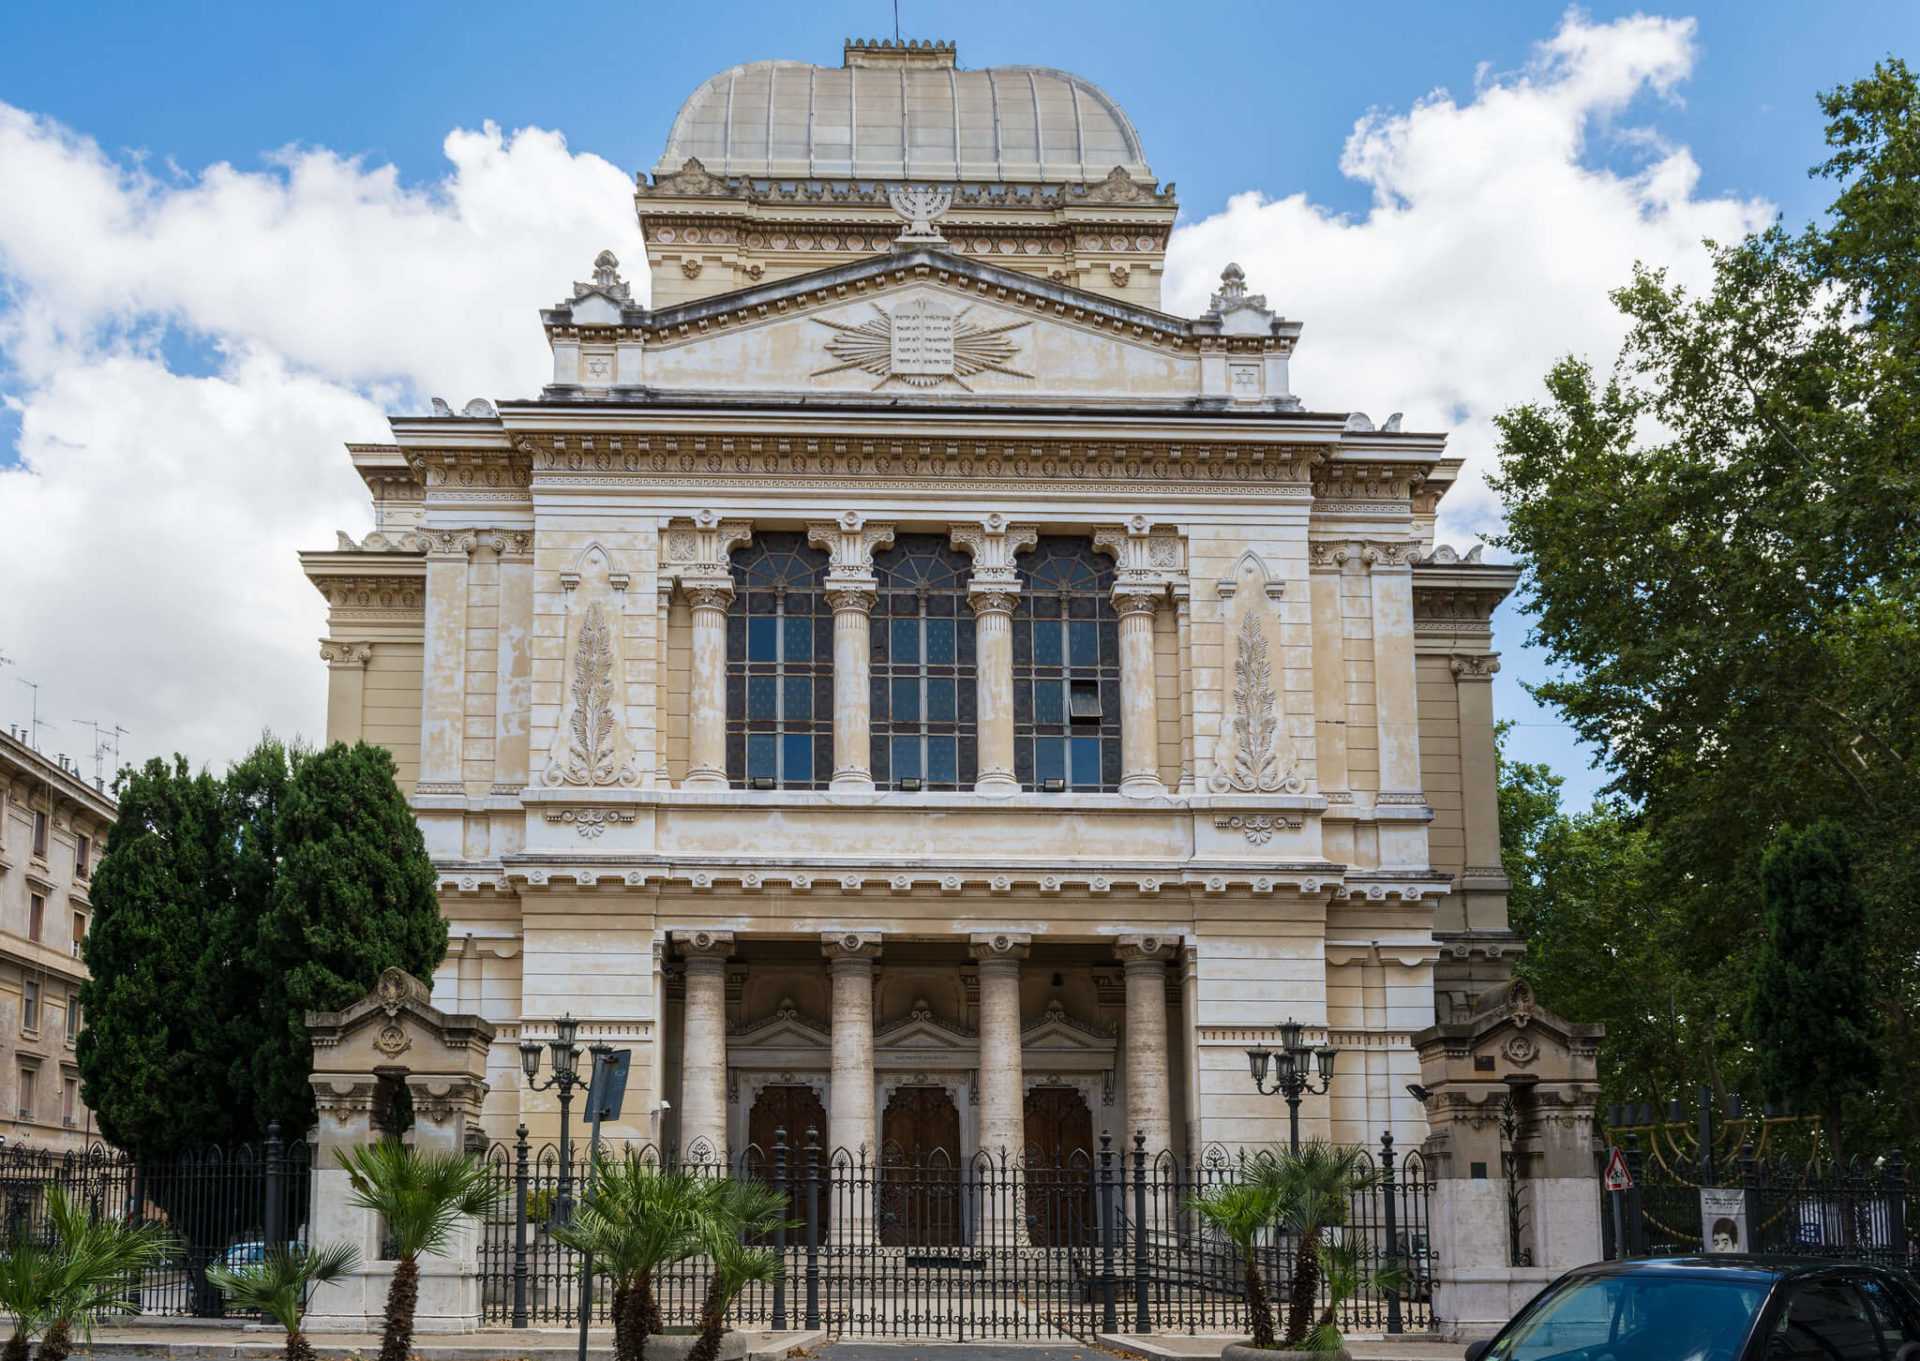 בית הכנסת הגדול רומא - מה אפשר לראות ולעשות שם?